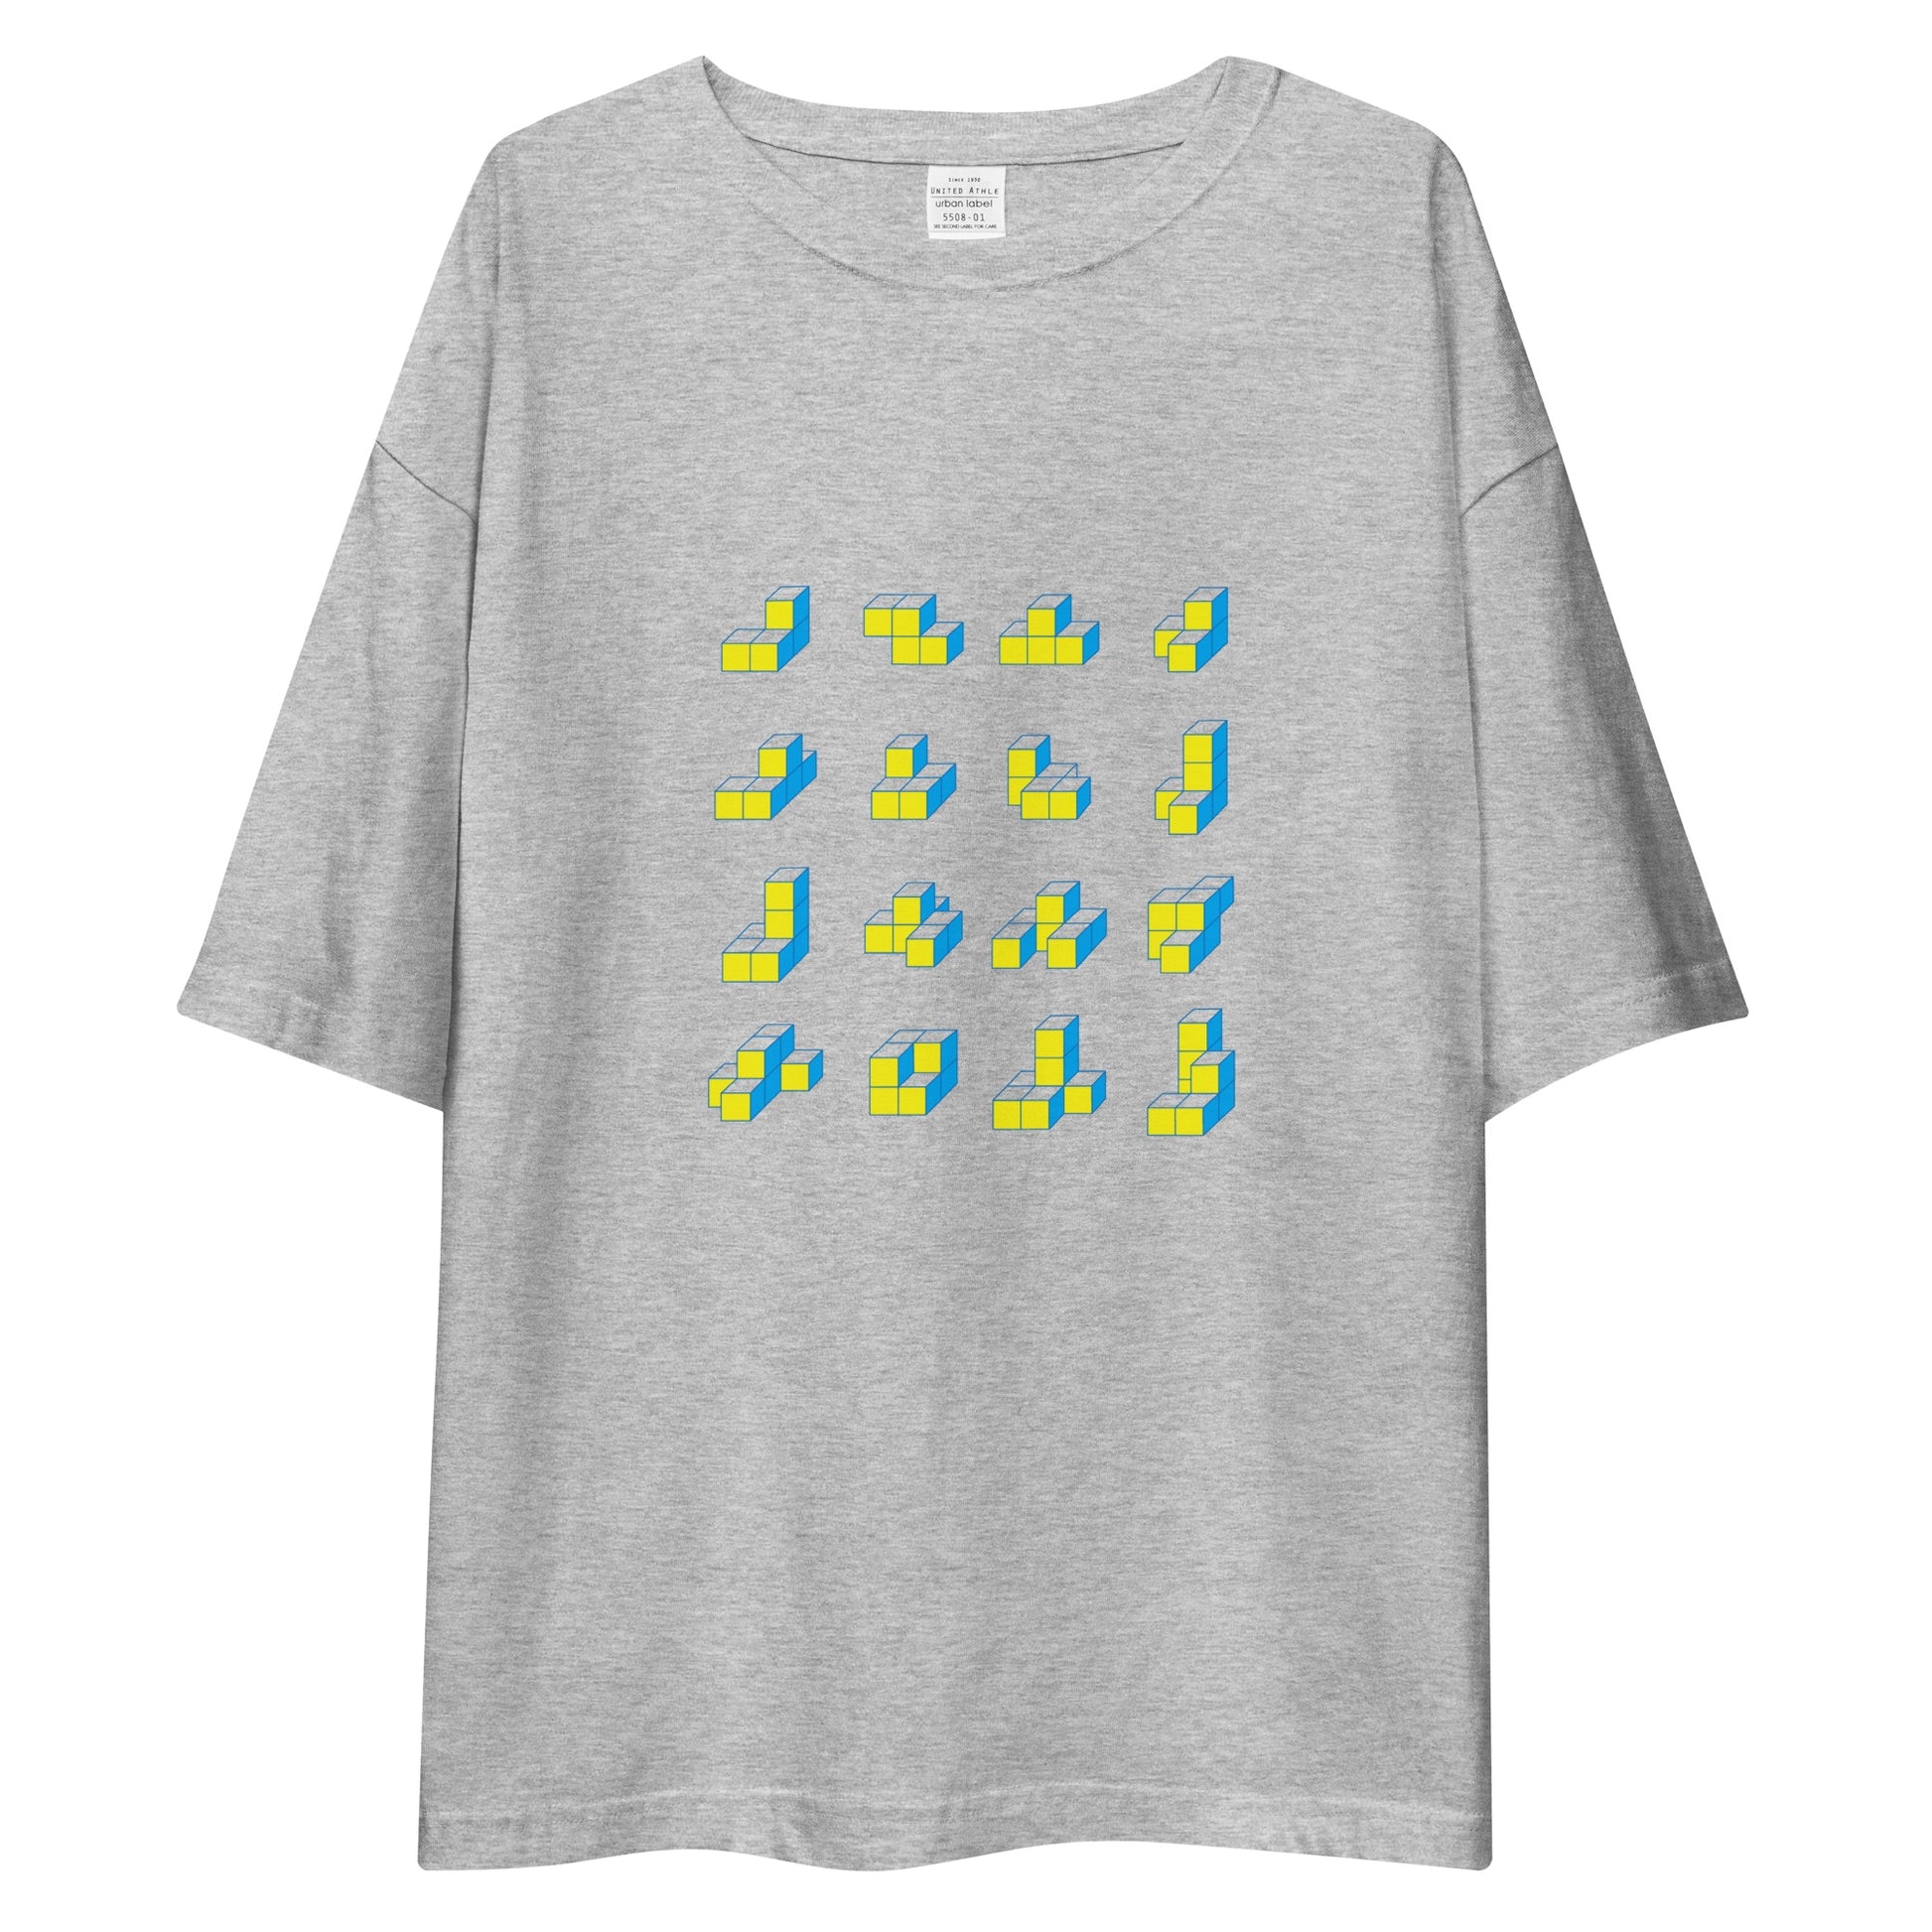 キューブ 黄×青 ビッグシルエットTシャツ [ライトカラー] ミックスグレー S 00